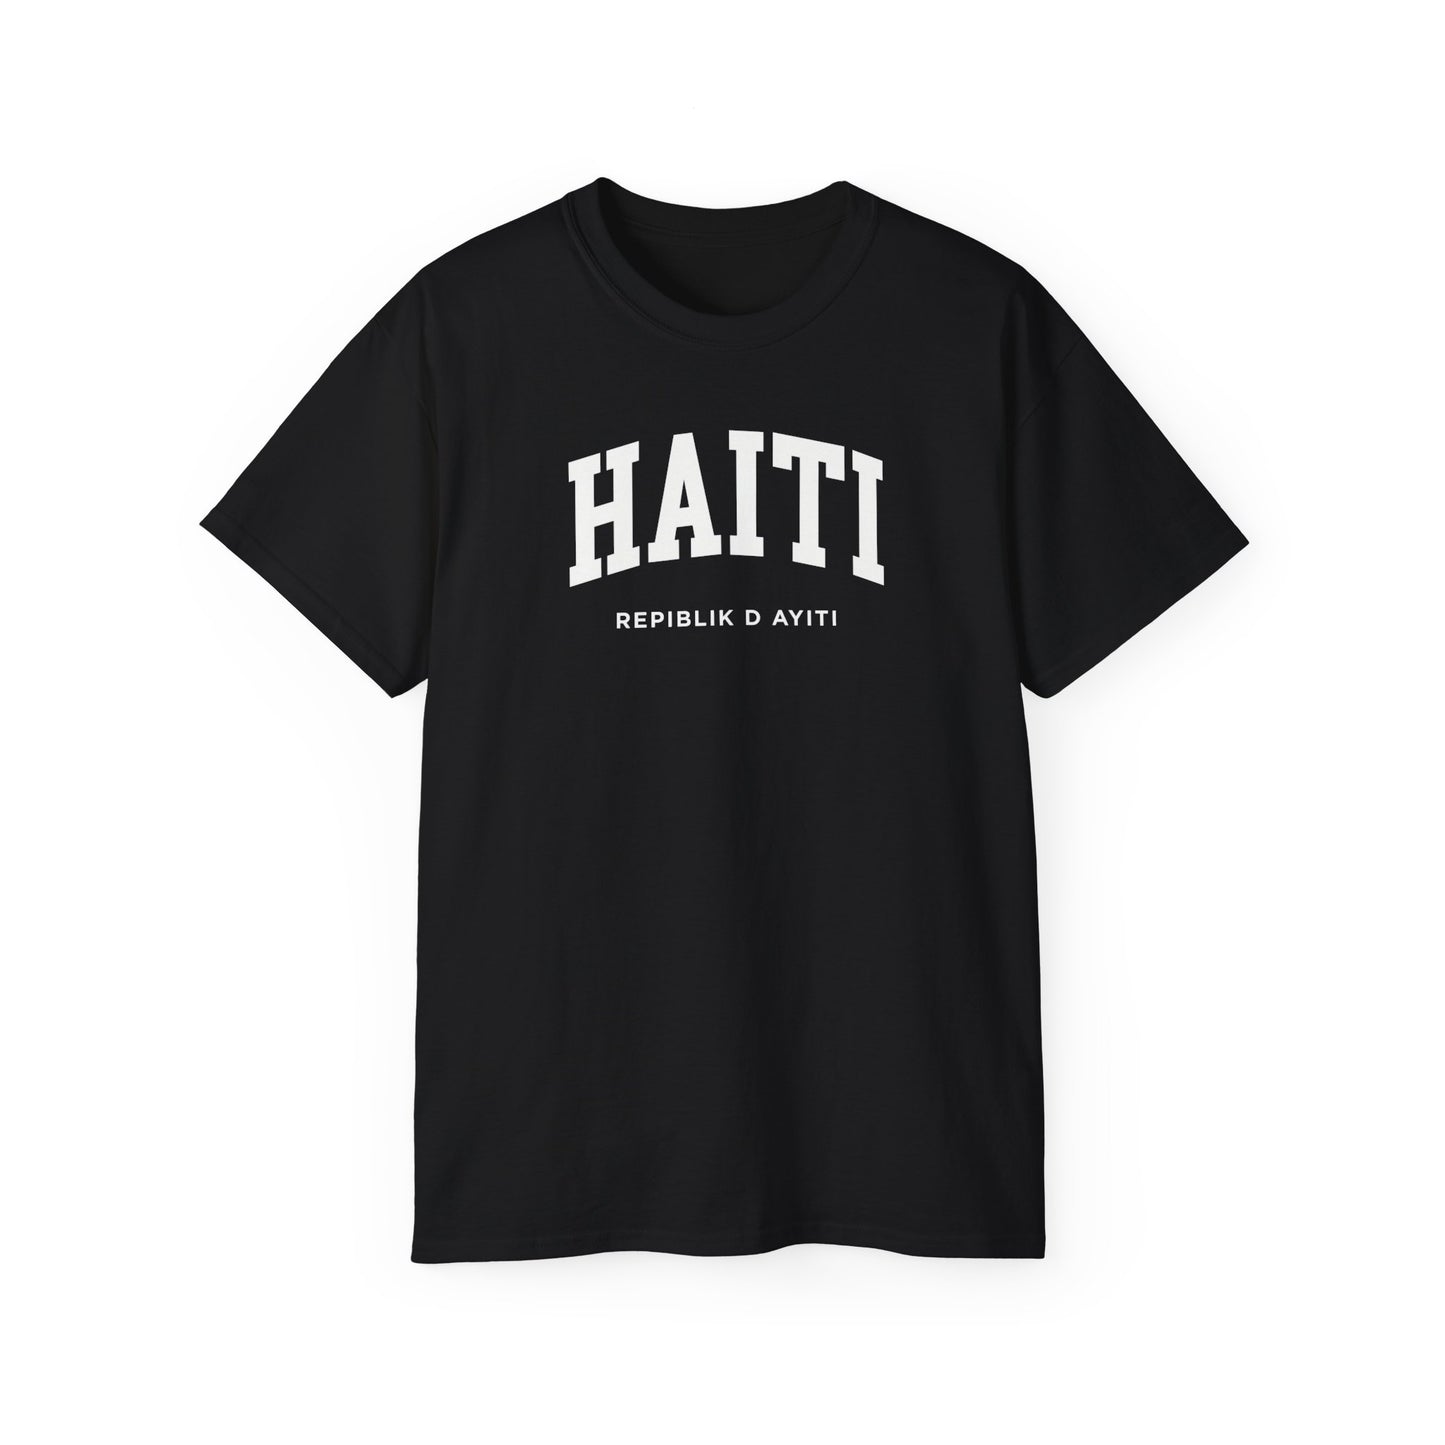 Haiti Tee